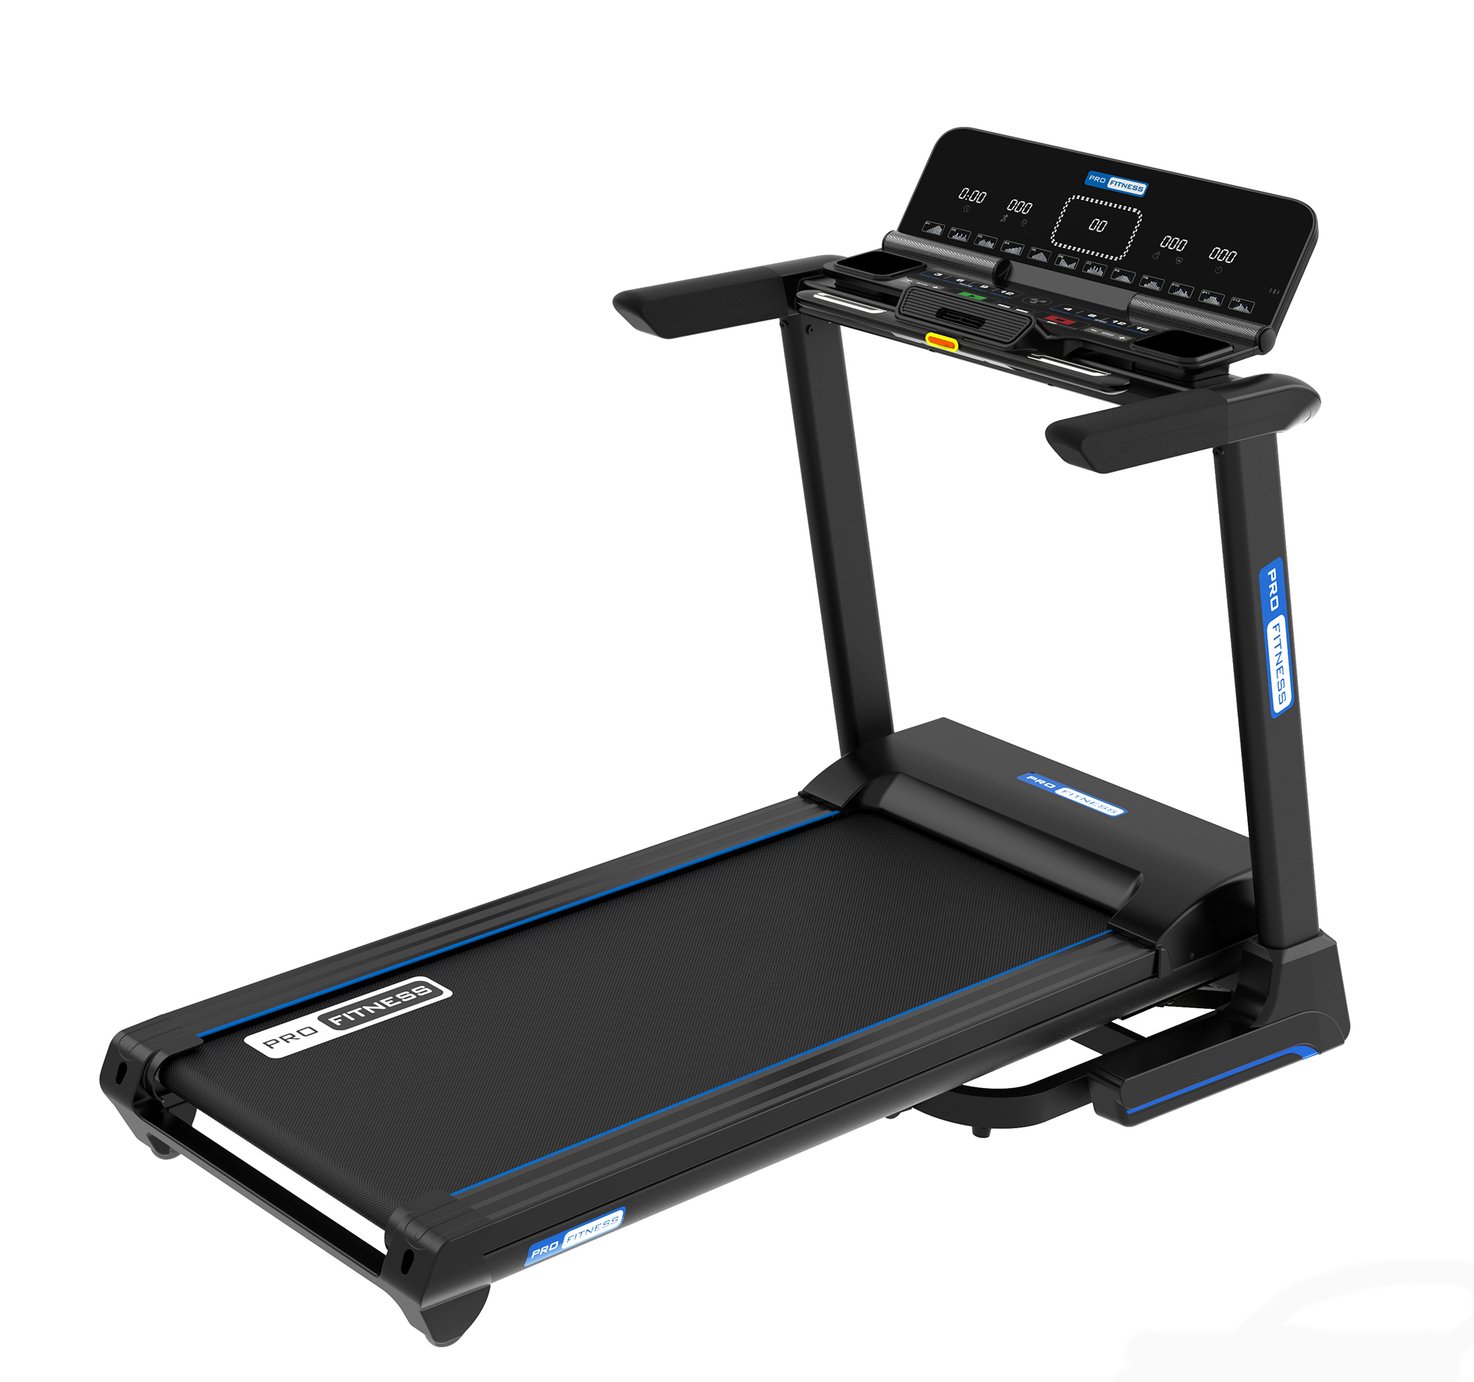 Pro Fitness T3000 Folding Treadmill